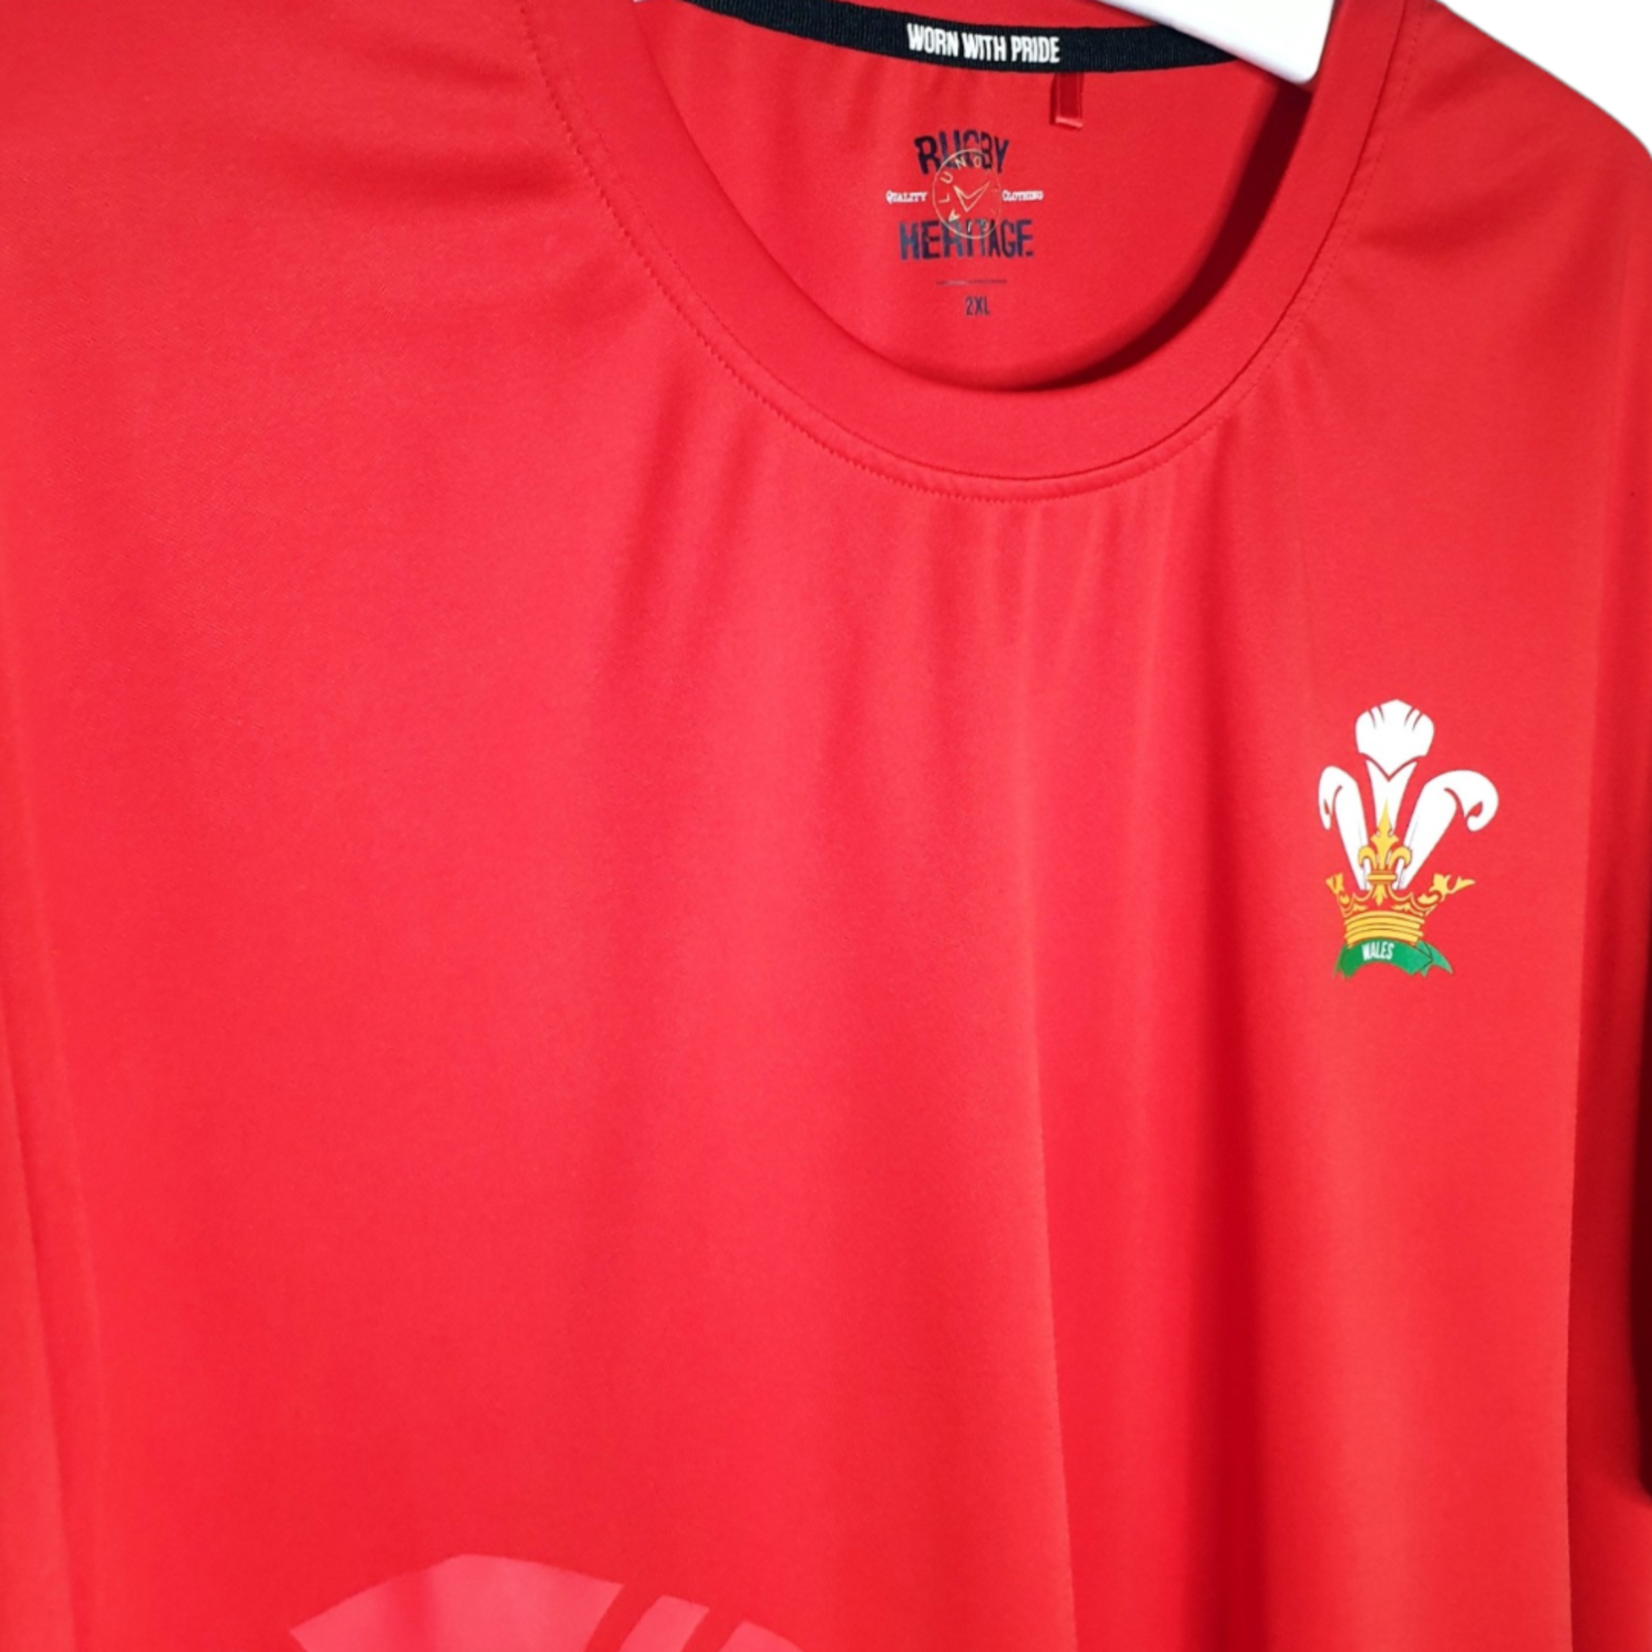 Worn with Pride Origineel Worn With Pride vintage rugby shirt Wales